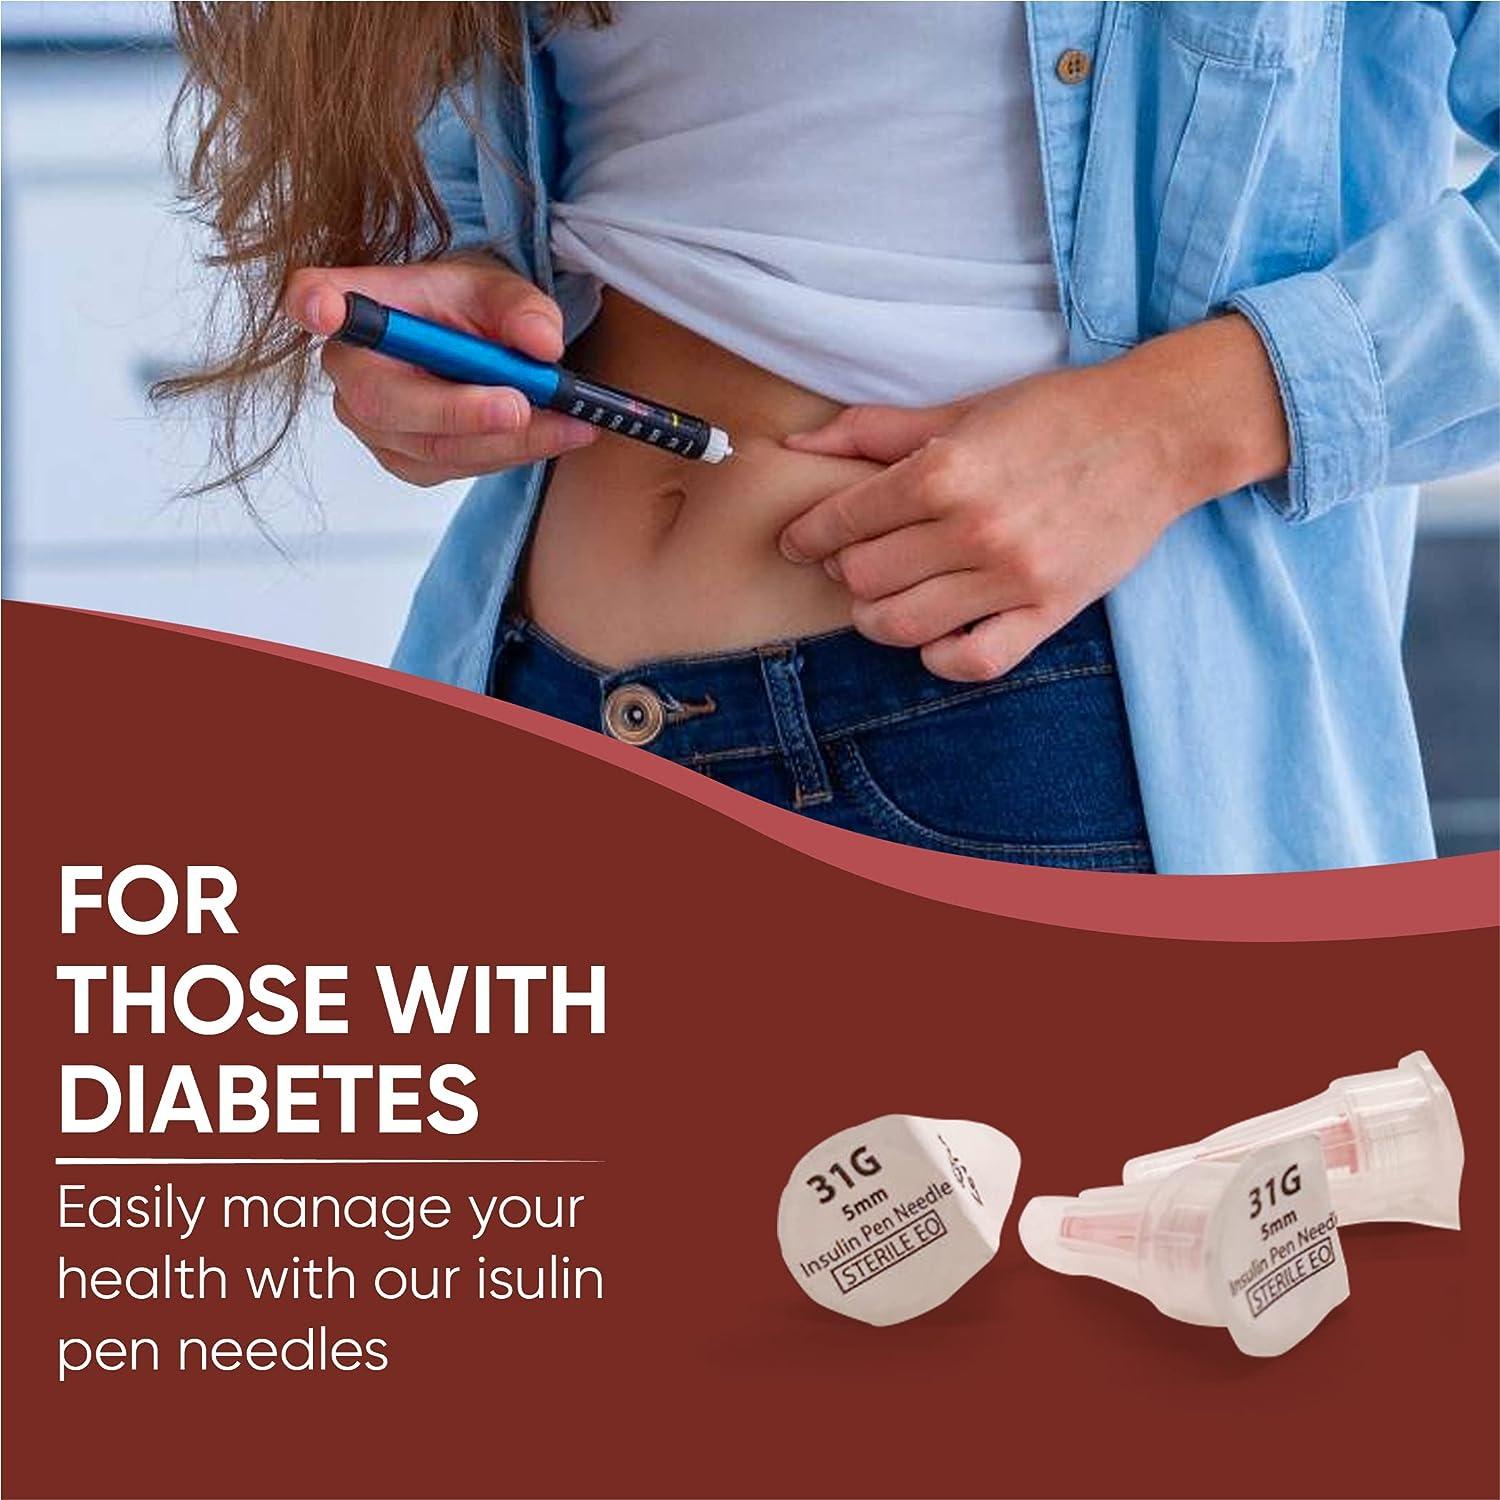 Insulin Pen Needle 100 Count (31G 5mm)